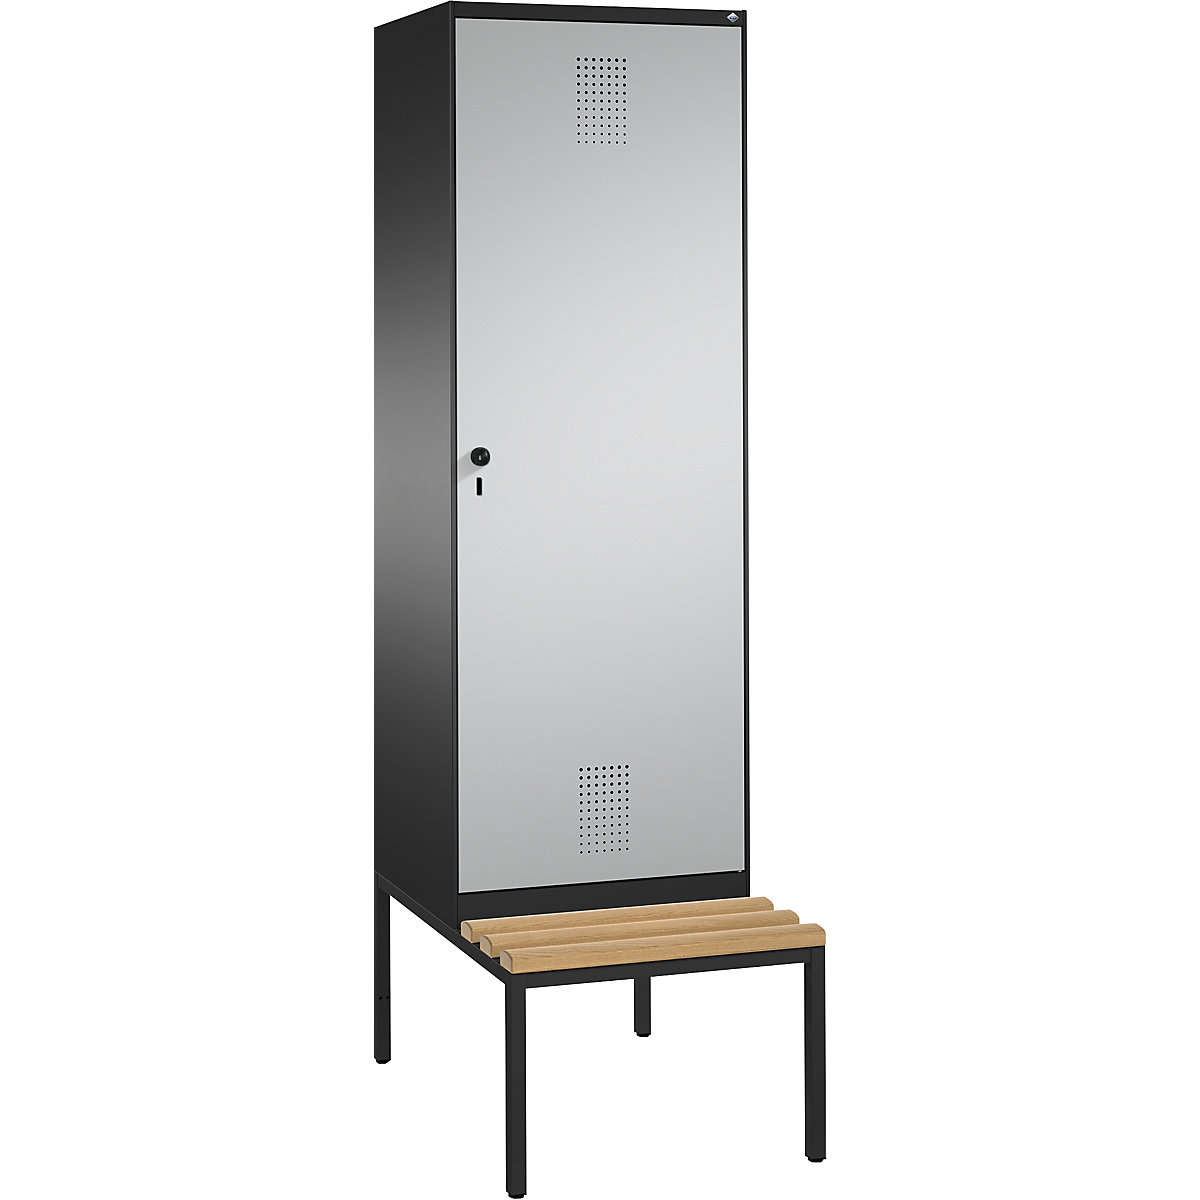 Šatní skříň s lavicí EVOLO s dveřmi přes 2 oddíly – C+P, 2 oddíly, 1 dveře, šířka oddílu 300 mm, černošedá / bílý hliník-9